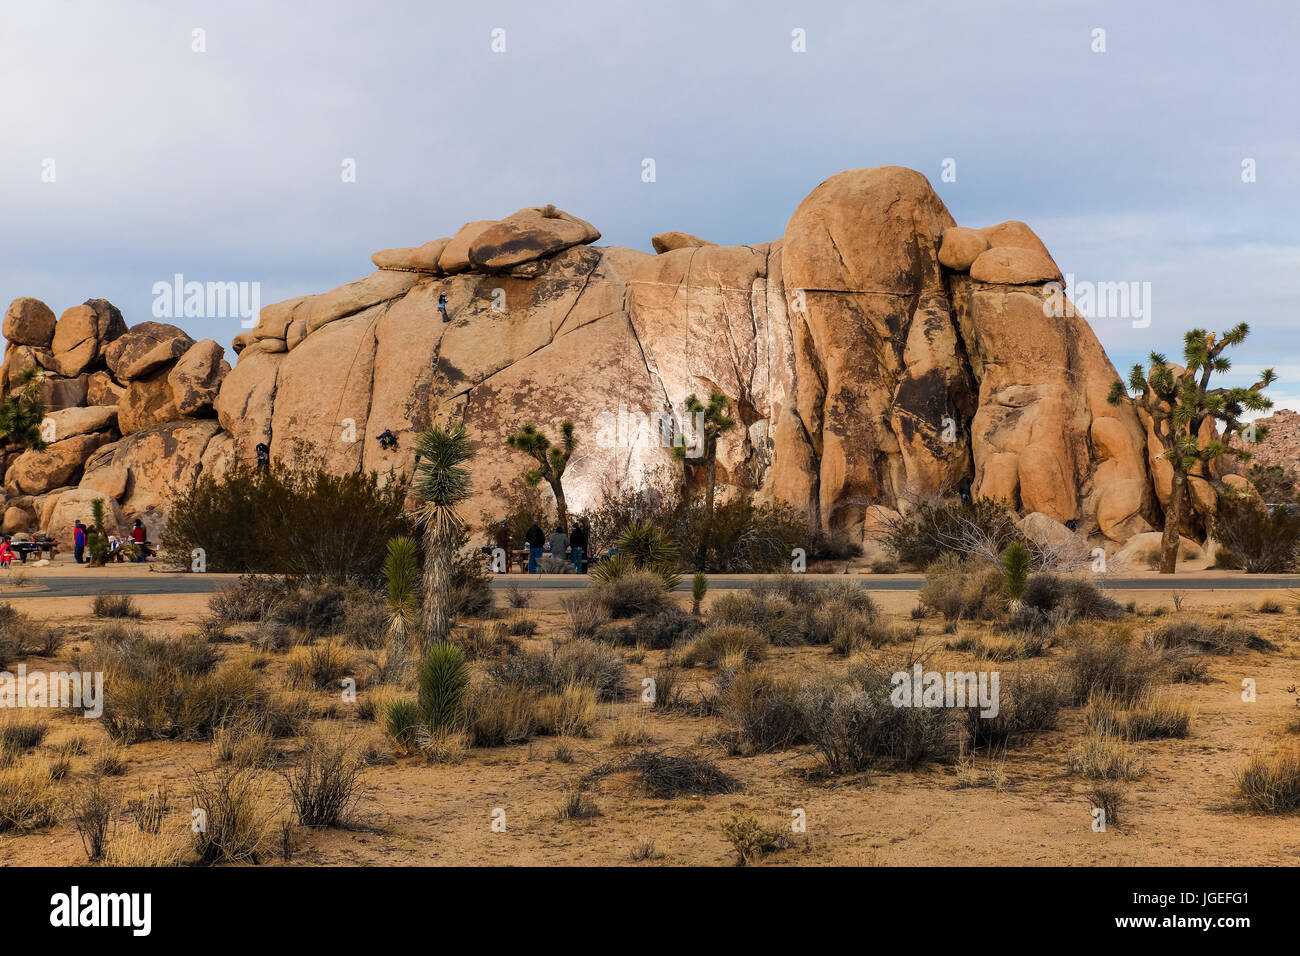 Freunde stehen um in die Wüste Suche an einem Felsen klettern Herausforderung Stockfoto